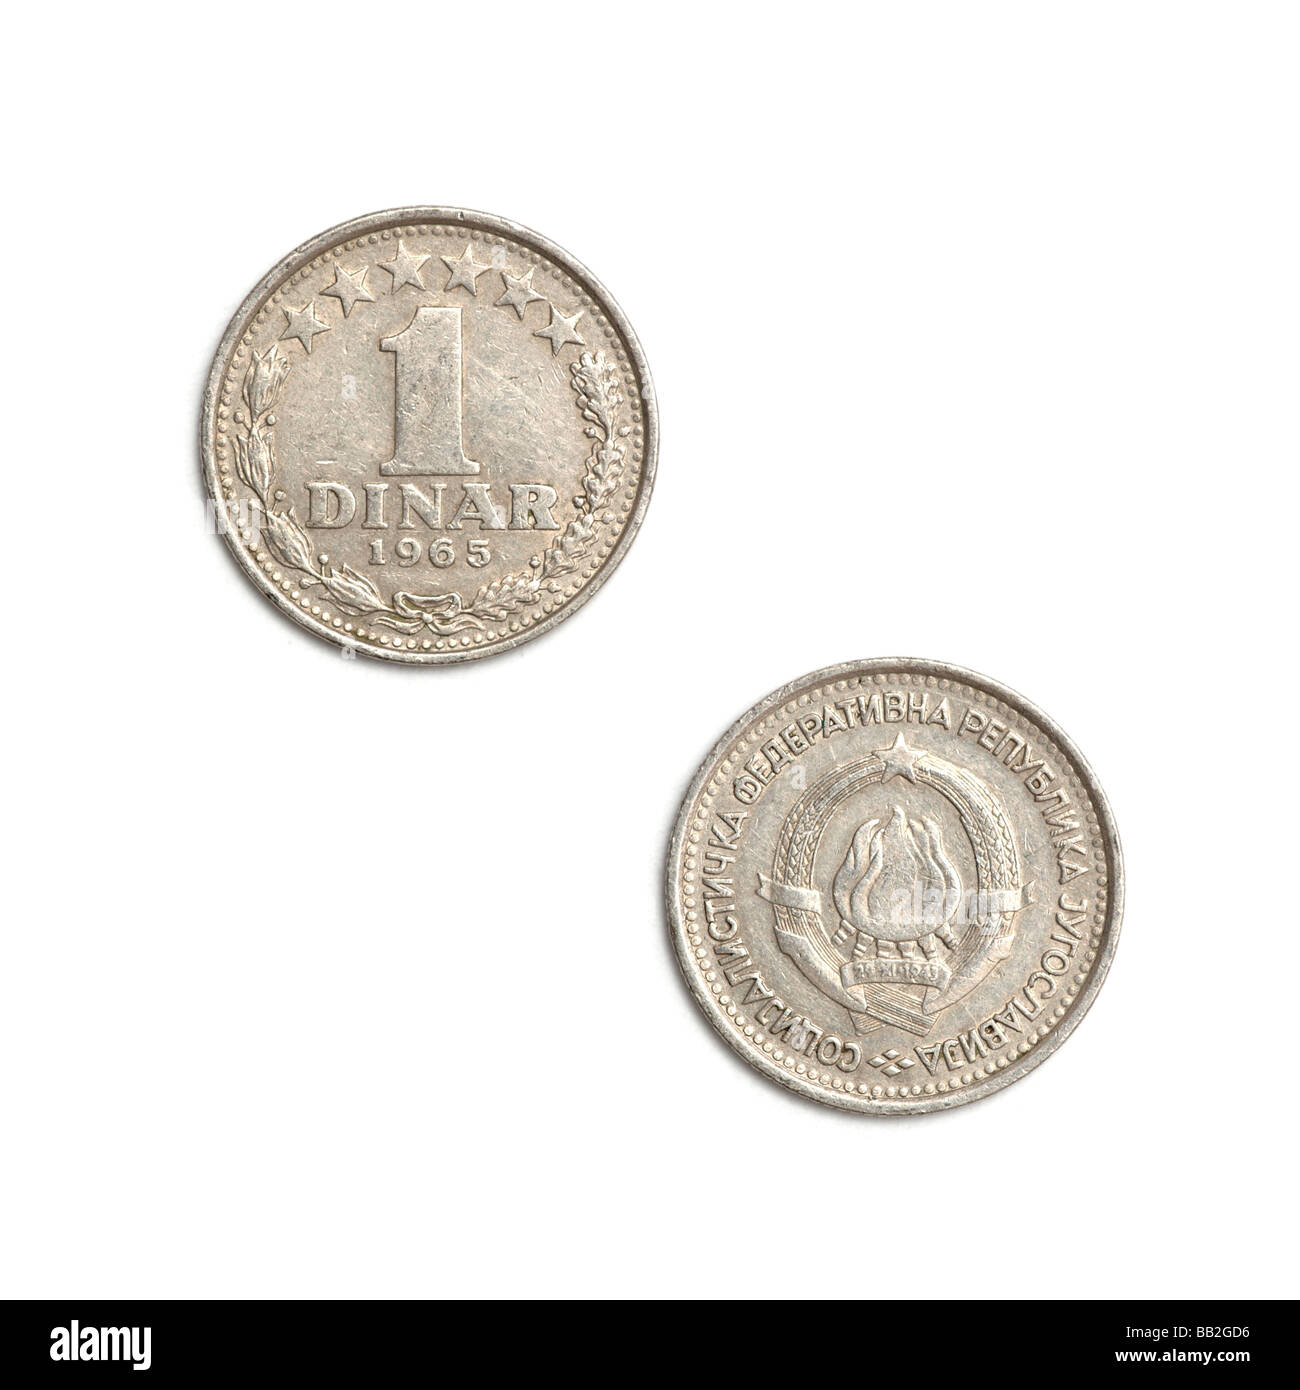 Yugoslavian dinar coin Stock Photo